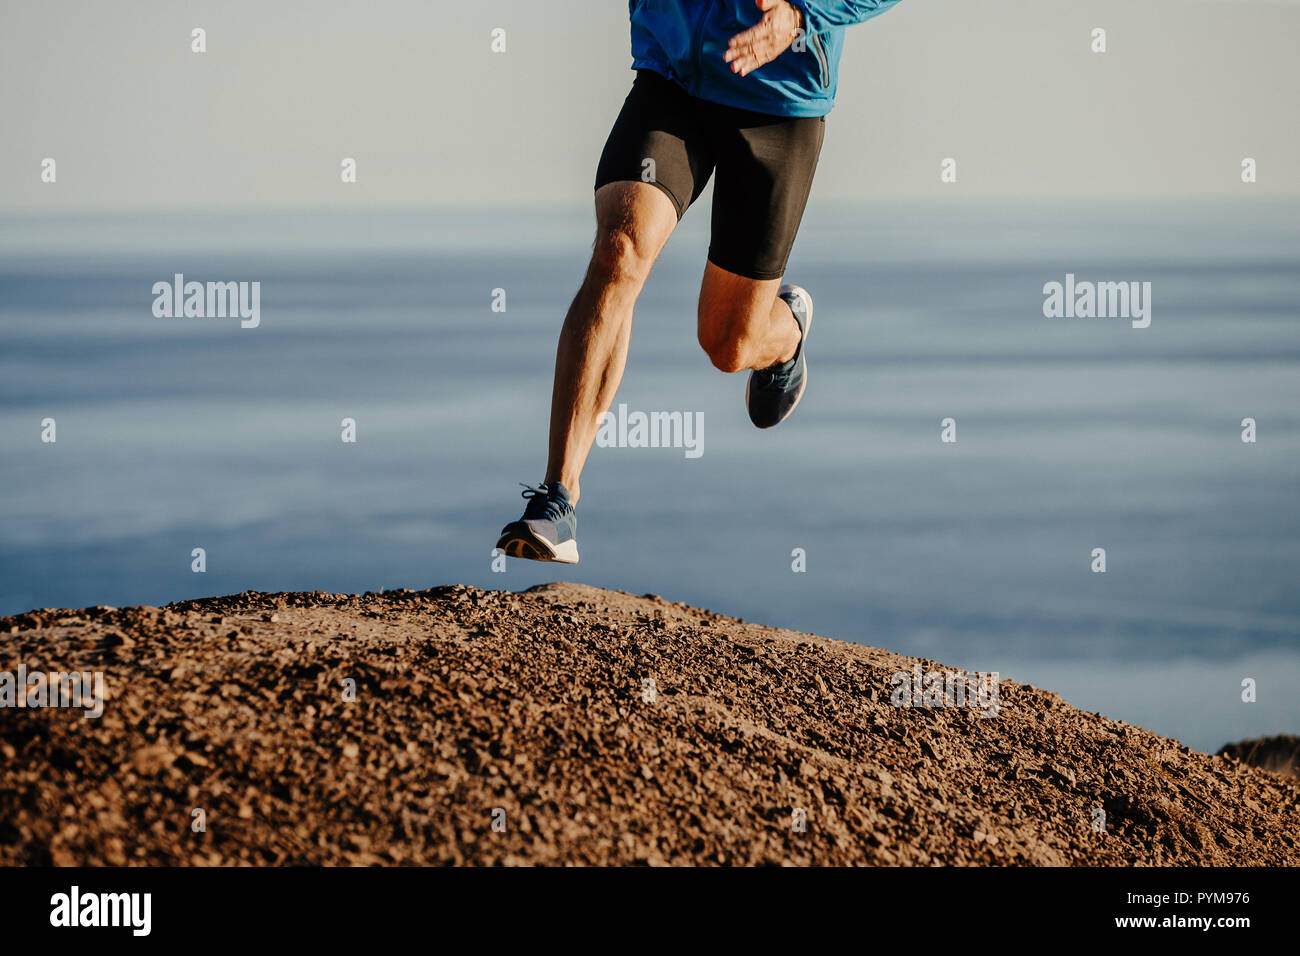 Atleta runner acceso in salita sulla montagna sullo sfondo di un mare Foto Stock